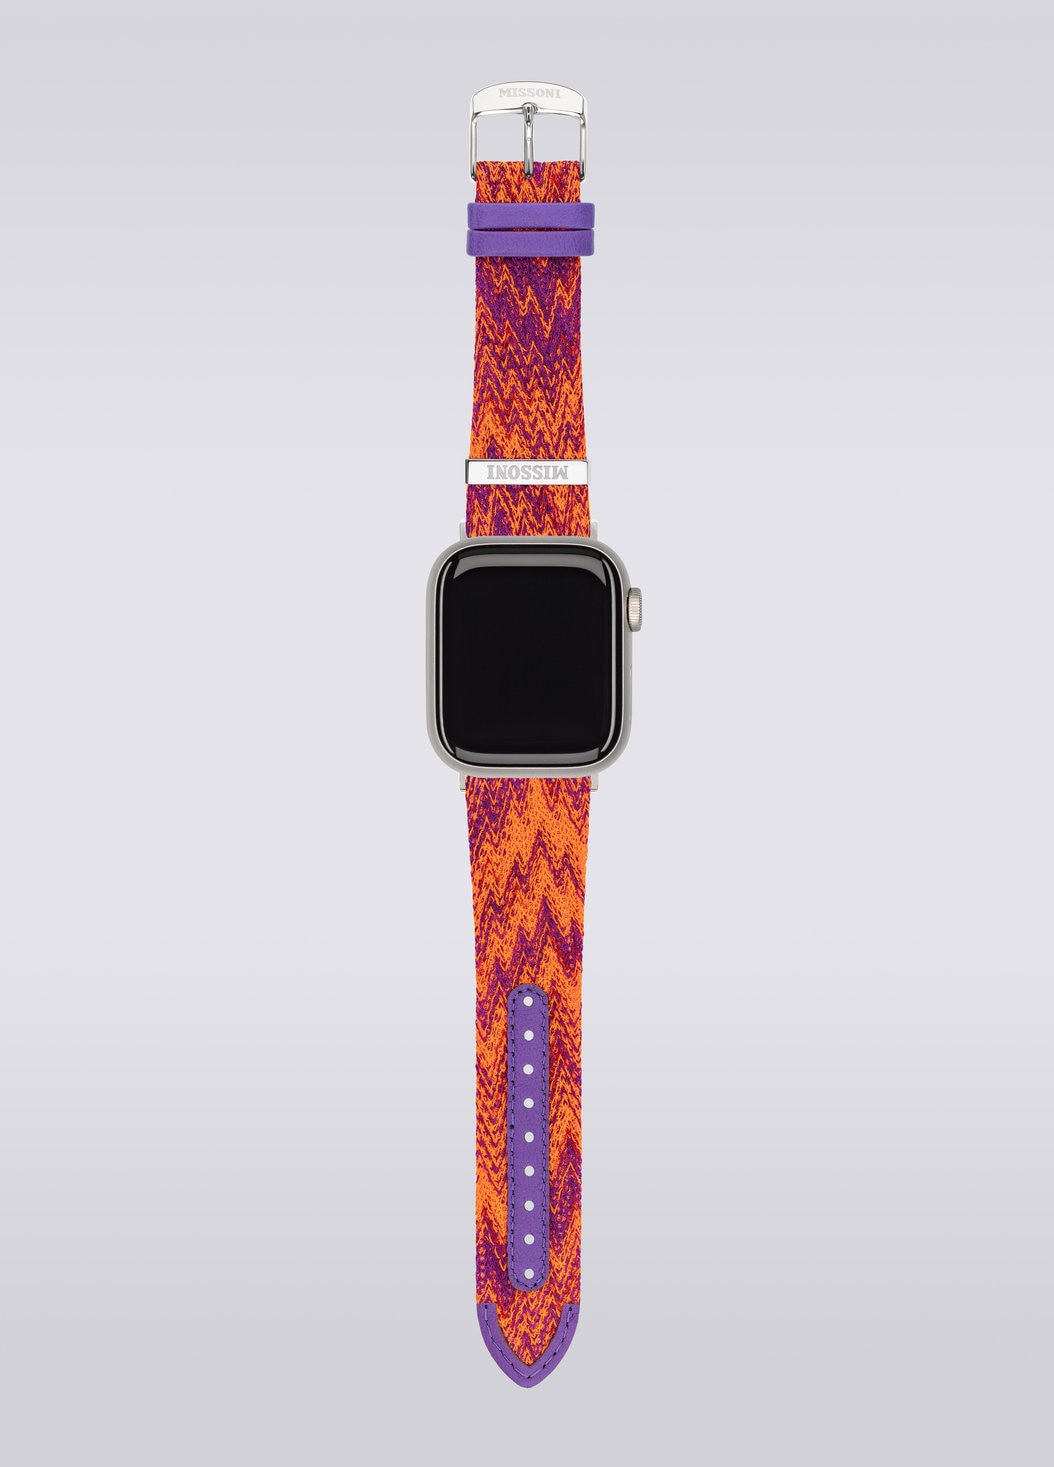 Missoni Fabric 22 mm mit Apple Watch kompatibles Armband, Mehrfarbig  - 8053147046235 - 3